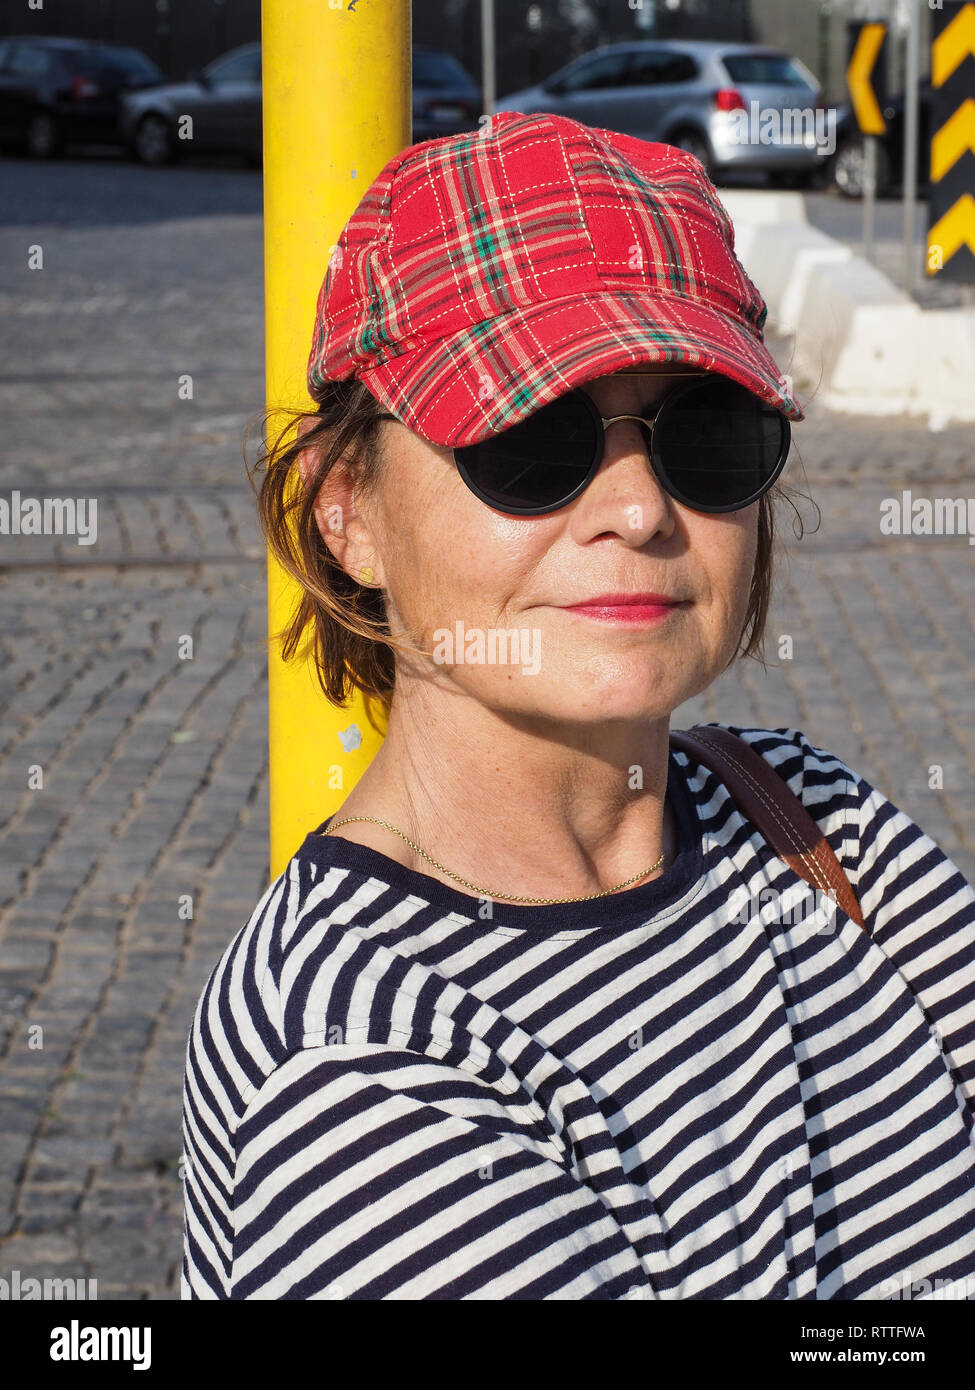 Mujer feliz con gafas de sol, una gorra de cuadros y una camisa a rayas, apoyado contra un polo amarillo mirando a la cámara con una amplia y cálida sonrisa Foto de stock